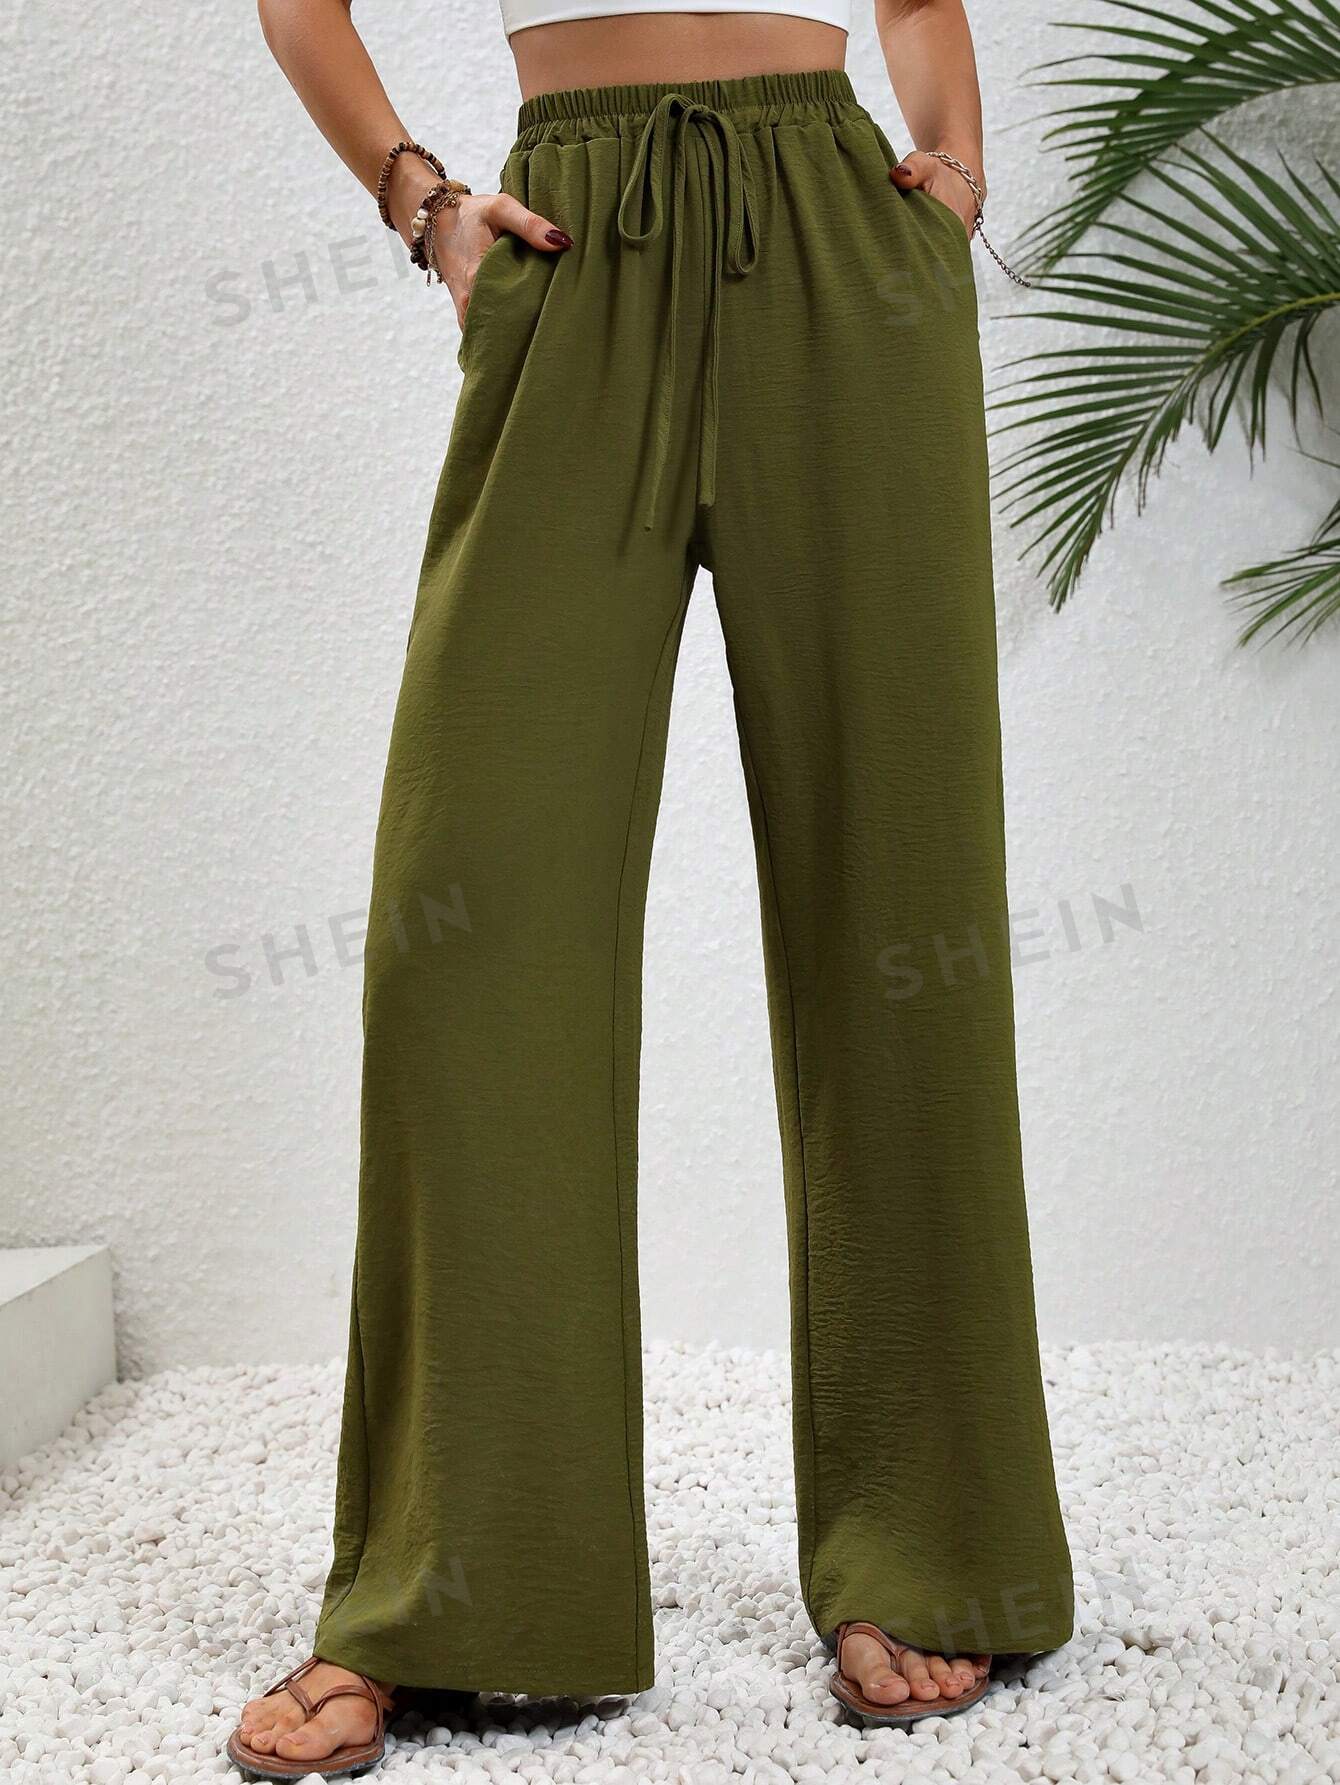 SHEIN LUNE женские однотонные длинные брюки с завышенной талией и завязками на талии и карманами, армейский зеленый брюки широкие с завязками s каштановый